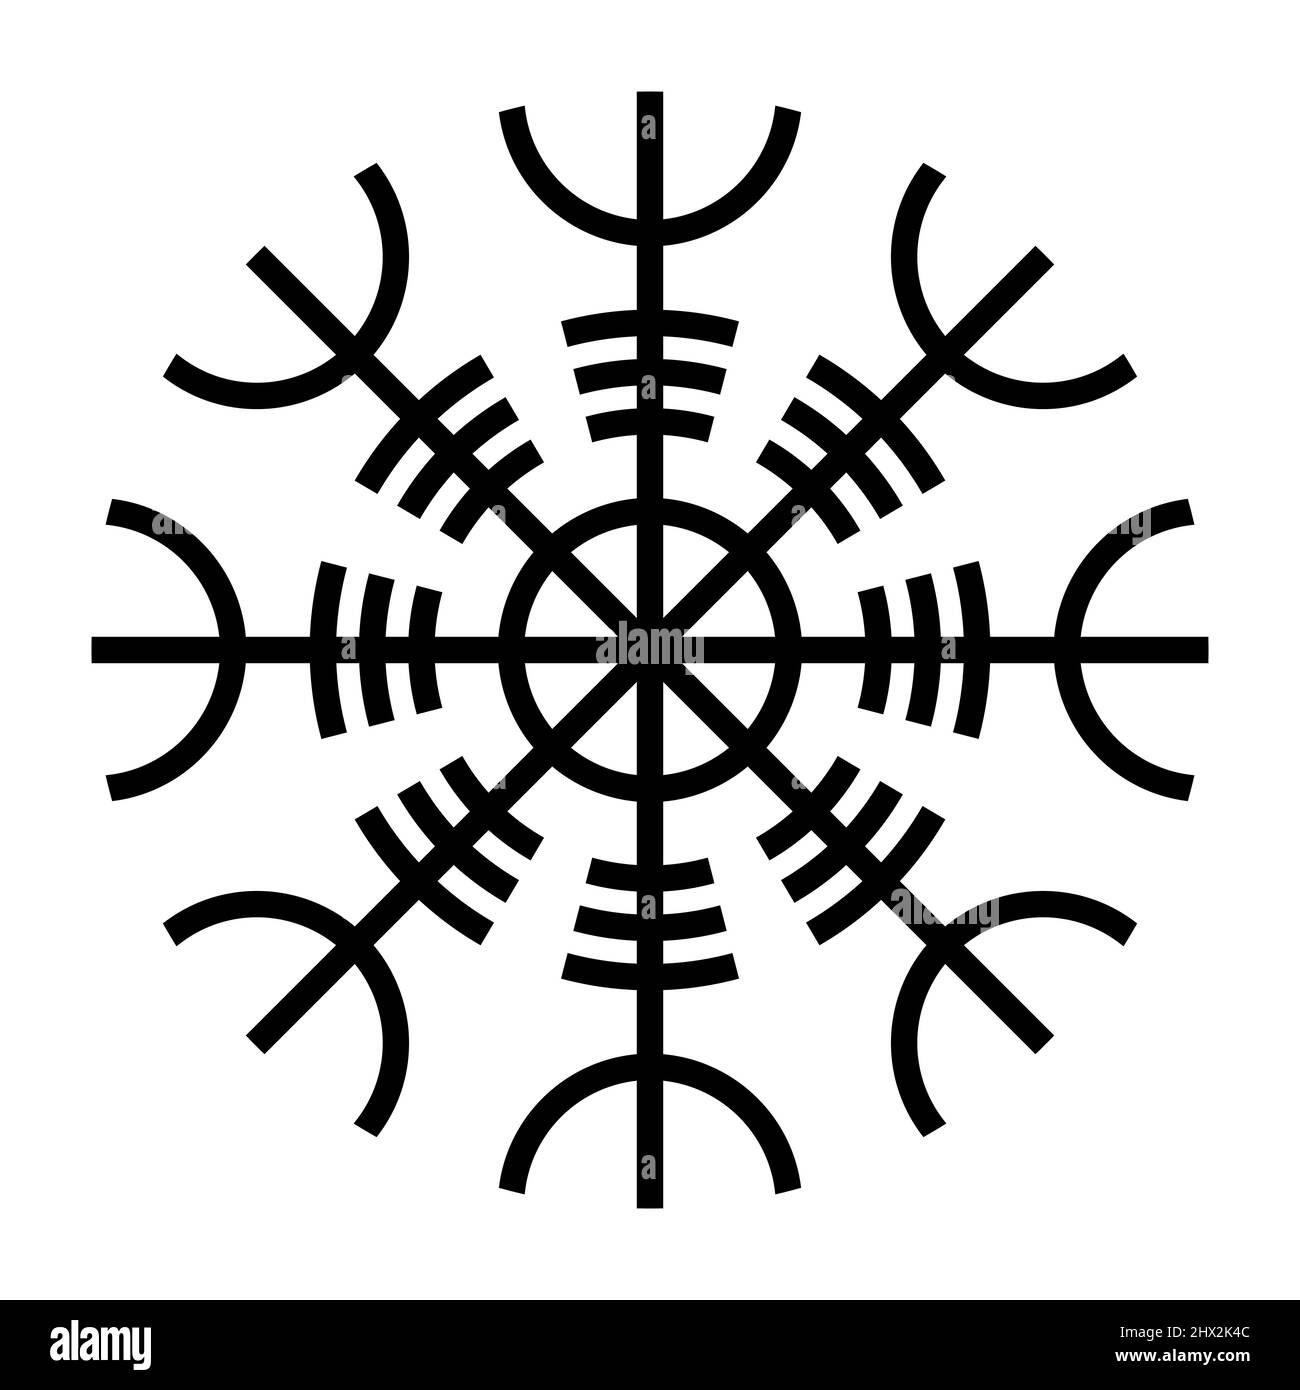 Il timone di stupore, Aegishjalmur, è il nome di un simbolo occulto islandese e di una stava magica, nella mitologia norrena. Usato come parte di un rituale magico cristiano. Foto Stock